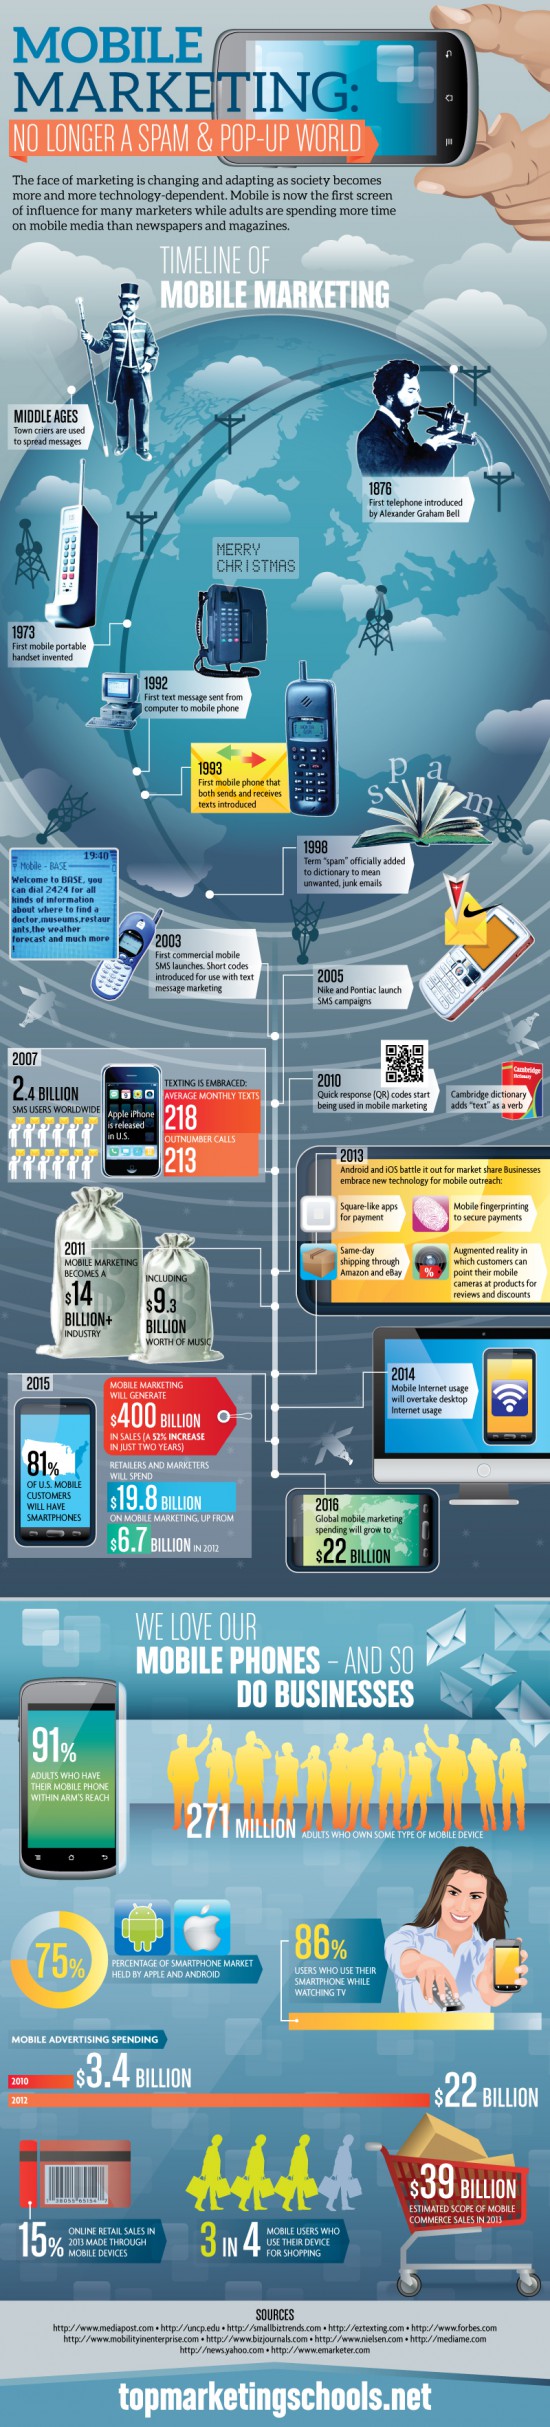 Infografik mit einer Übersicht zu den aktuellen Trends und Entwicklungen beim mobilen Marketing